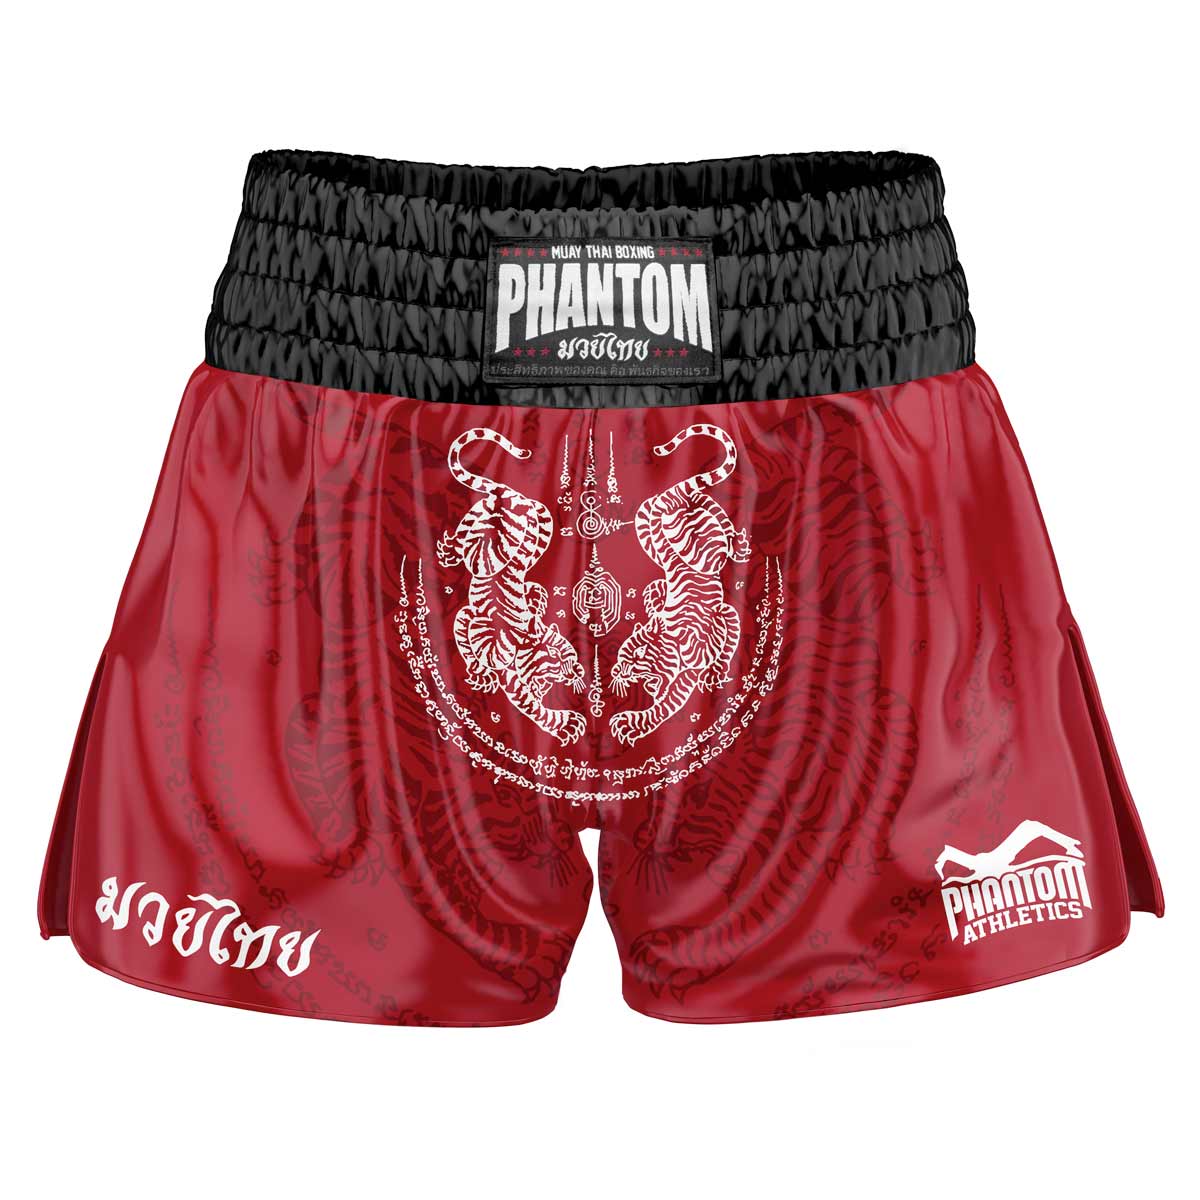 Los pantalones cortos Phantom Muay Thai SAK YANT en rojo. La tela satinada de la vieja escuela con un diseño tradicional de tigre te da una sensación original de Tailandia. Con la calidad habitual Phantom Athletics . Ideal para tu entrenamiento y competición de boxeo tailandés.